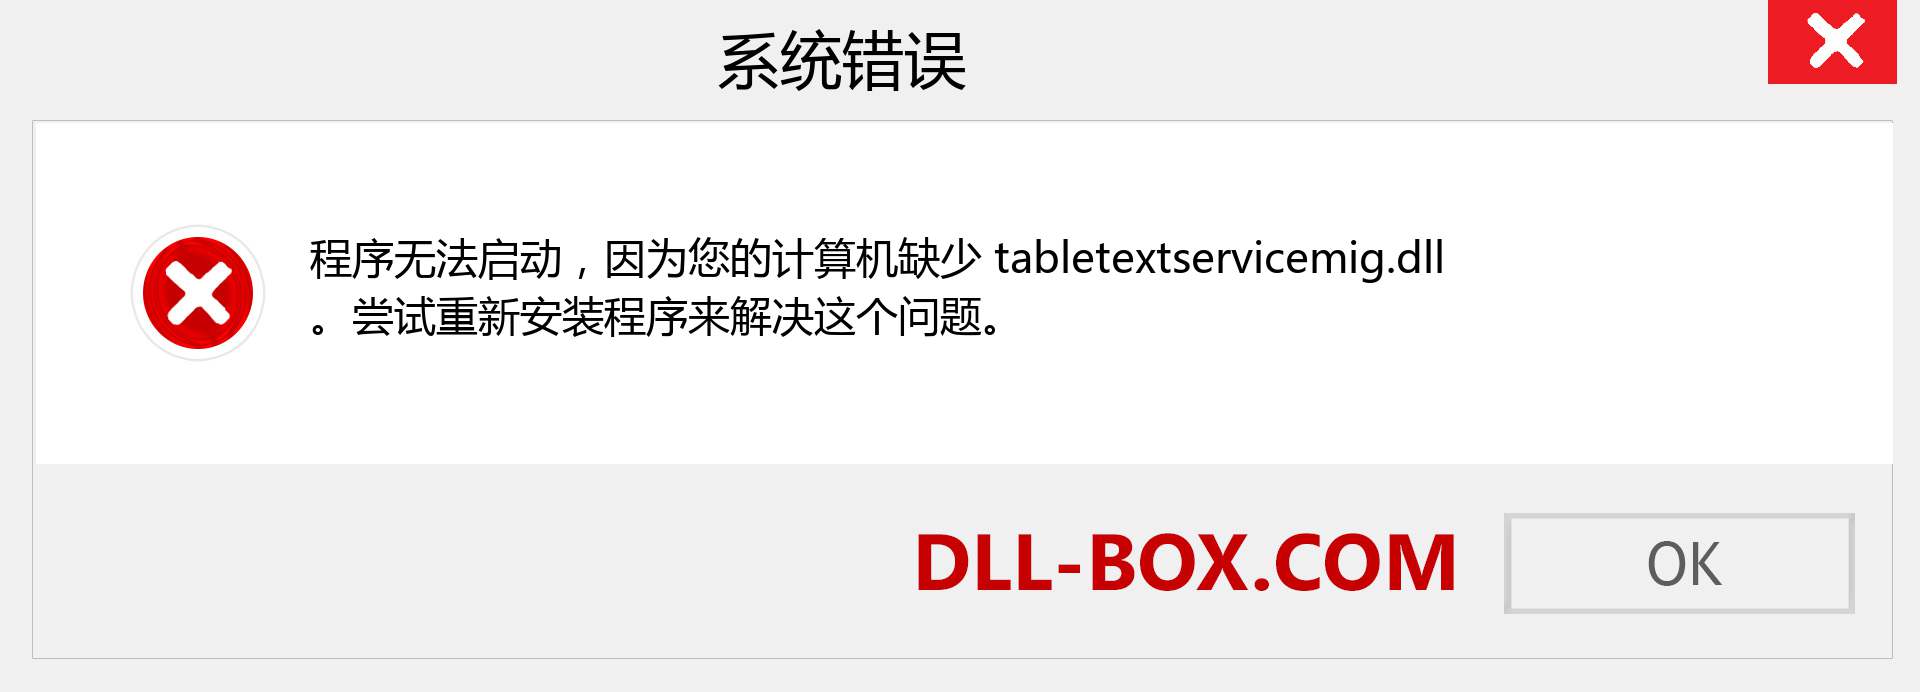 tabletextservicemig.dll 文件丢失？。 适用于 Windows 7、8、10 的下载 - 修复 Windows、照片、图像上的 tabletextservicemig dll 丢失错误